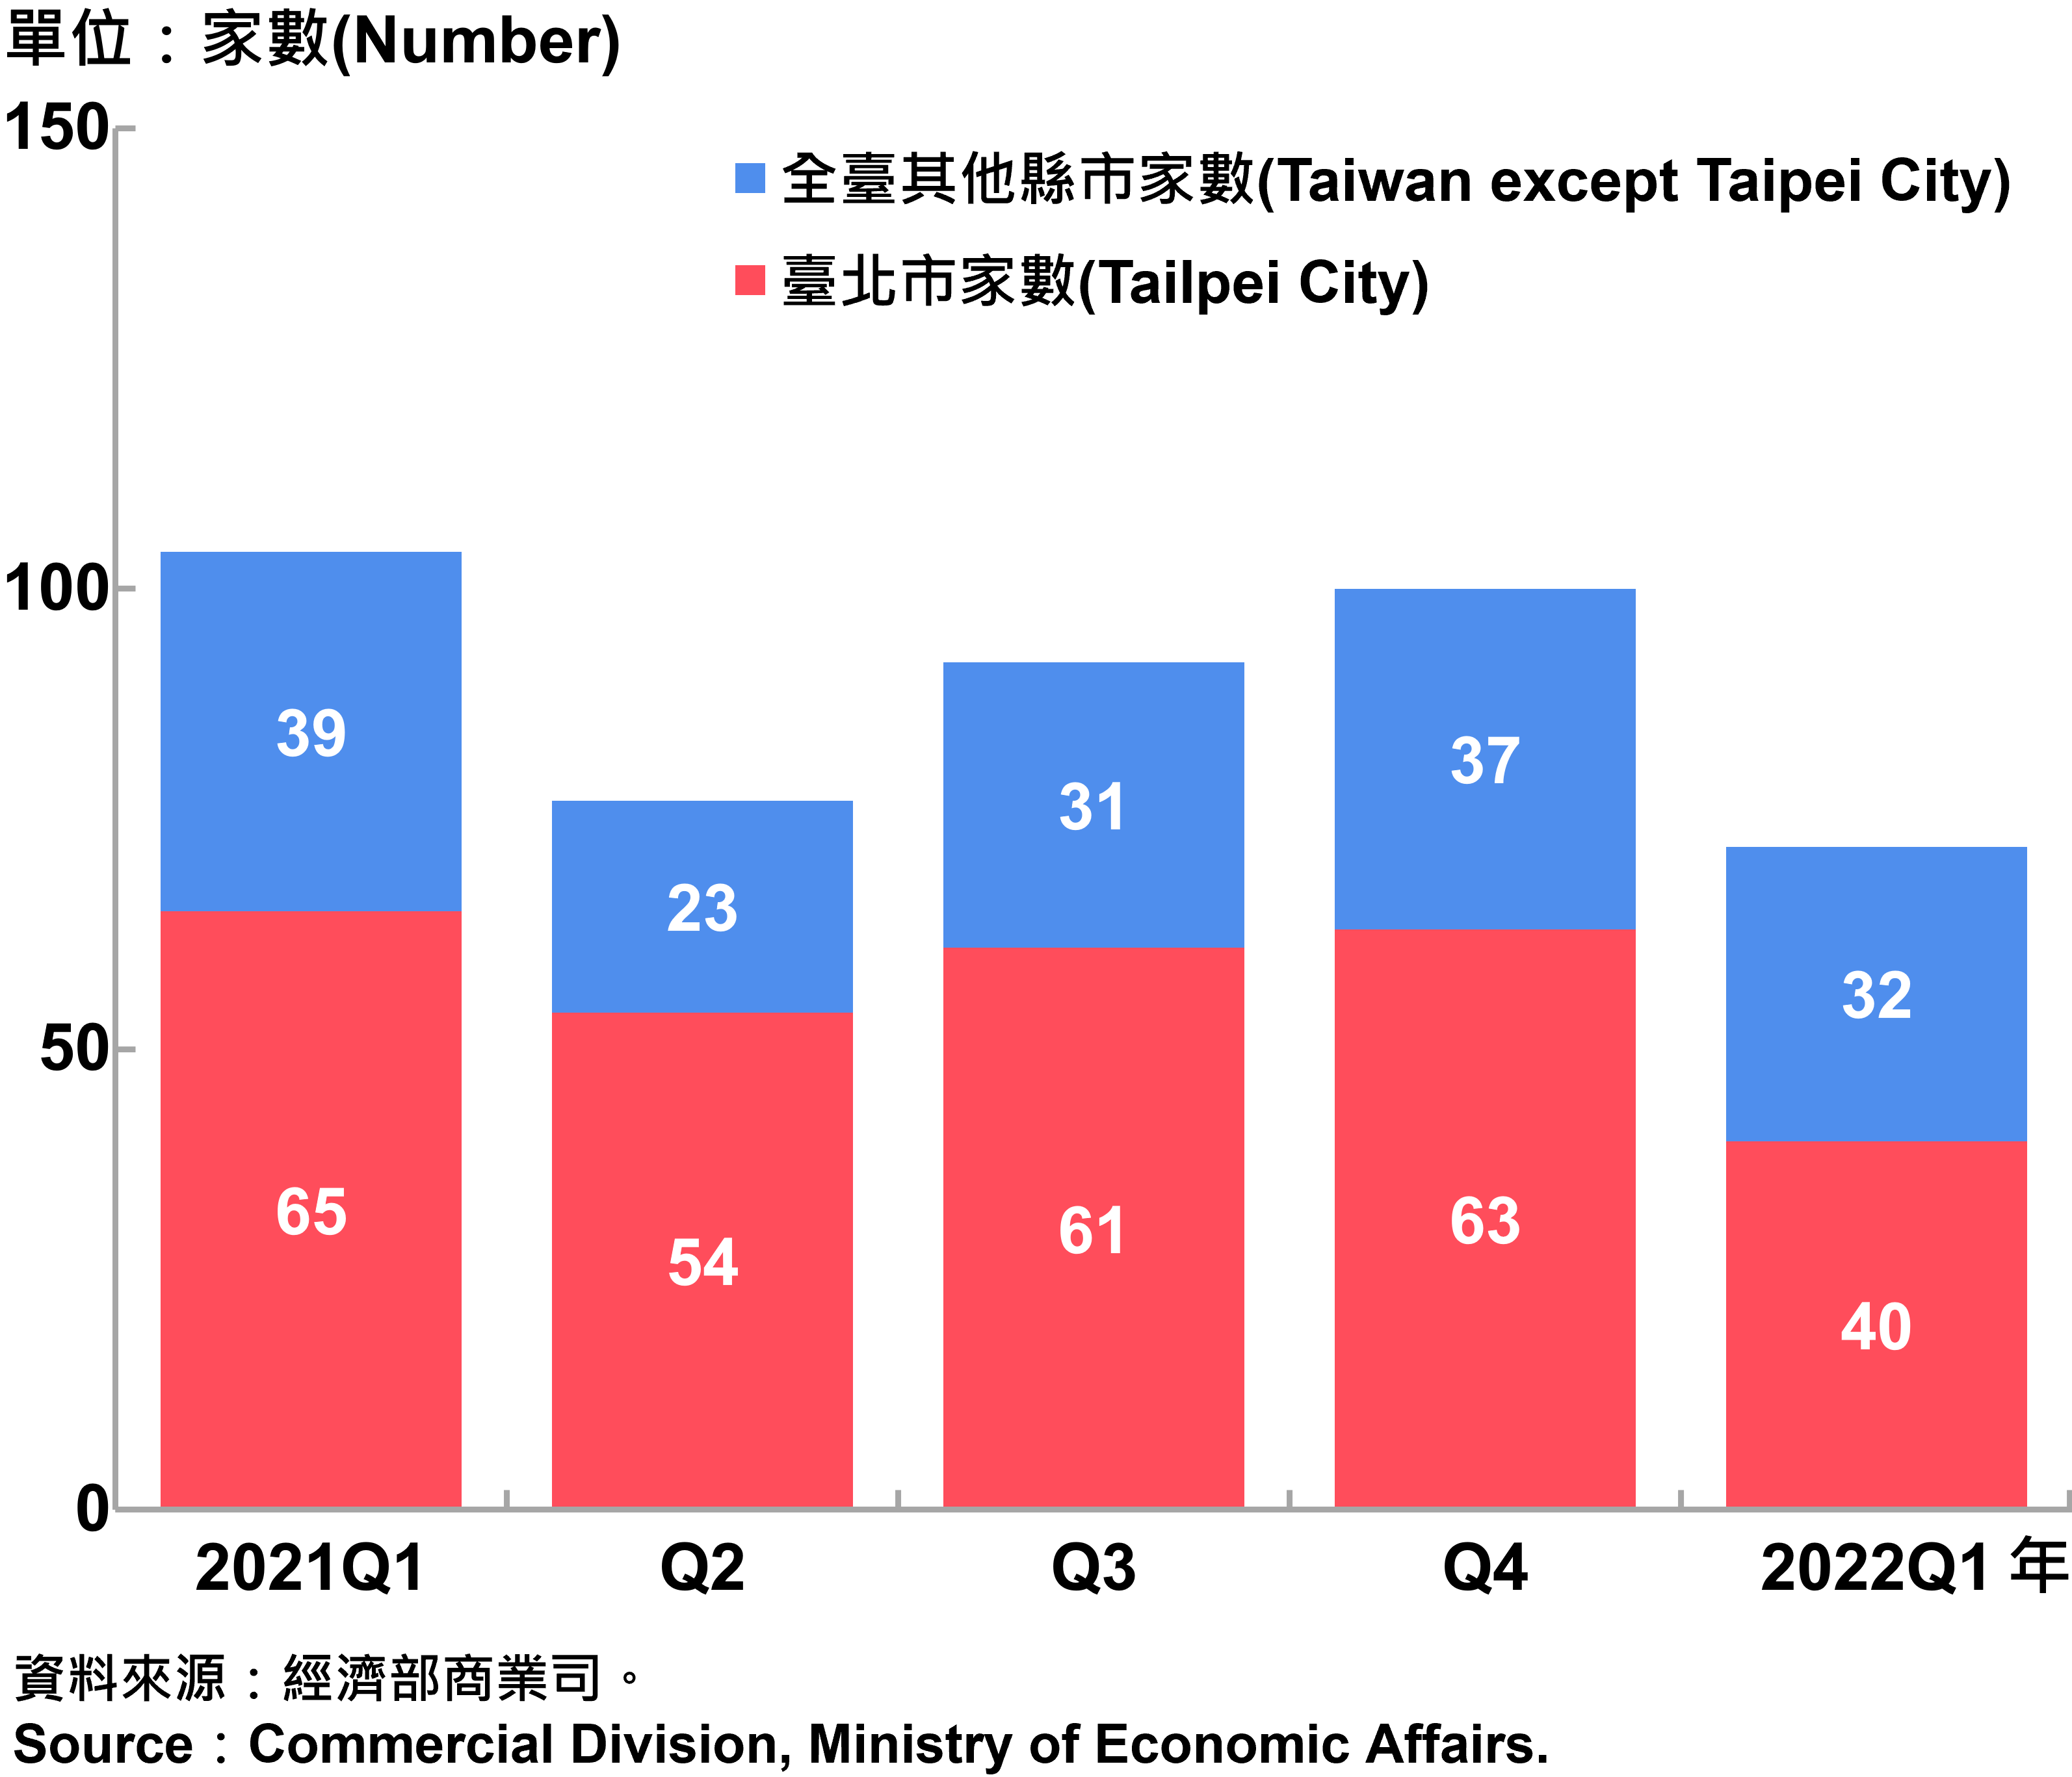 臺北市外商公司新設立家數—2022Q1 Number of Newly Established Foreign Companies in Taipei City—2022Q1